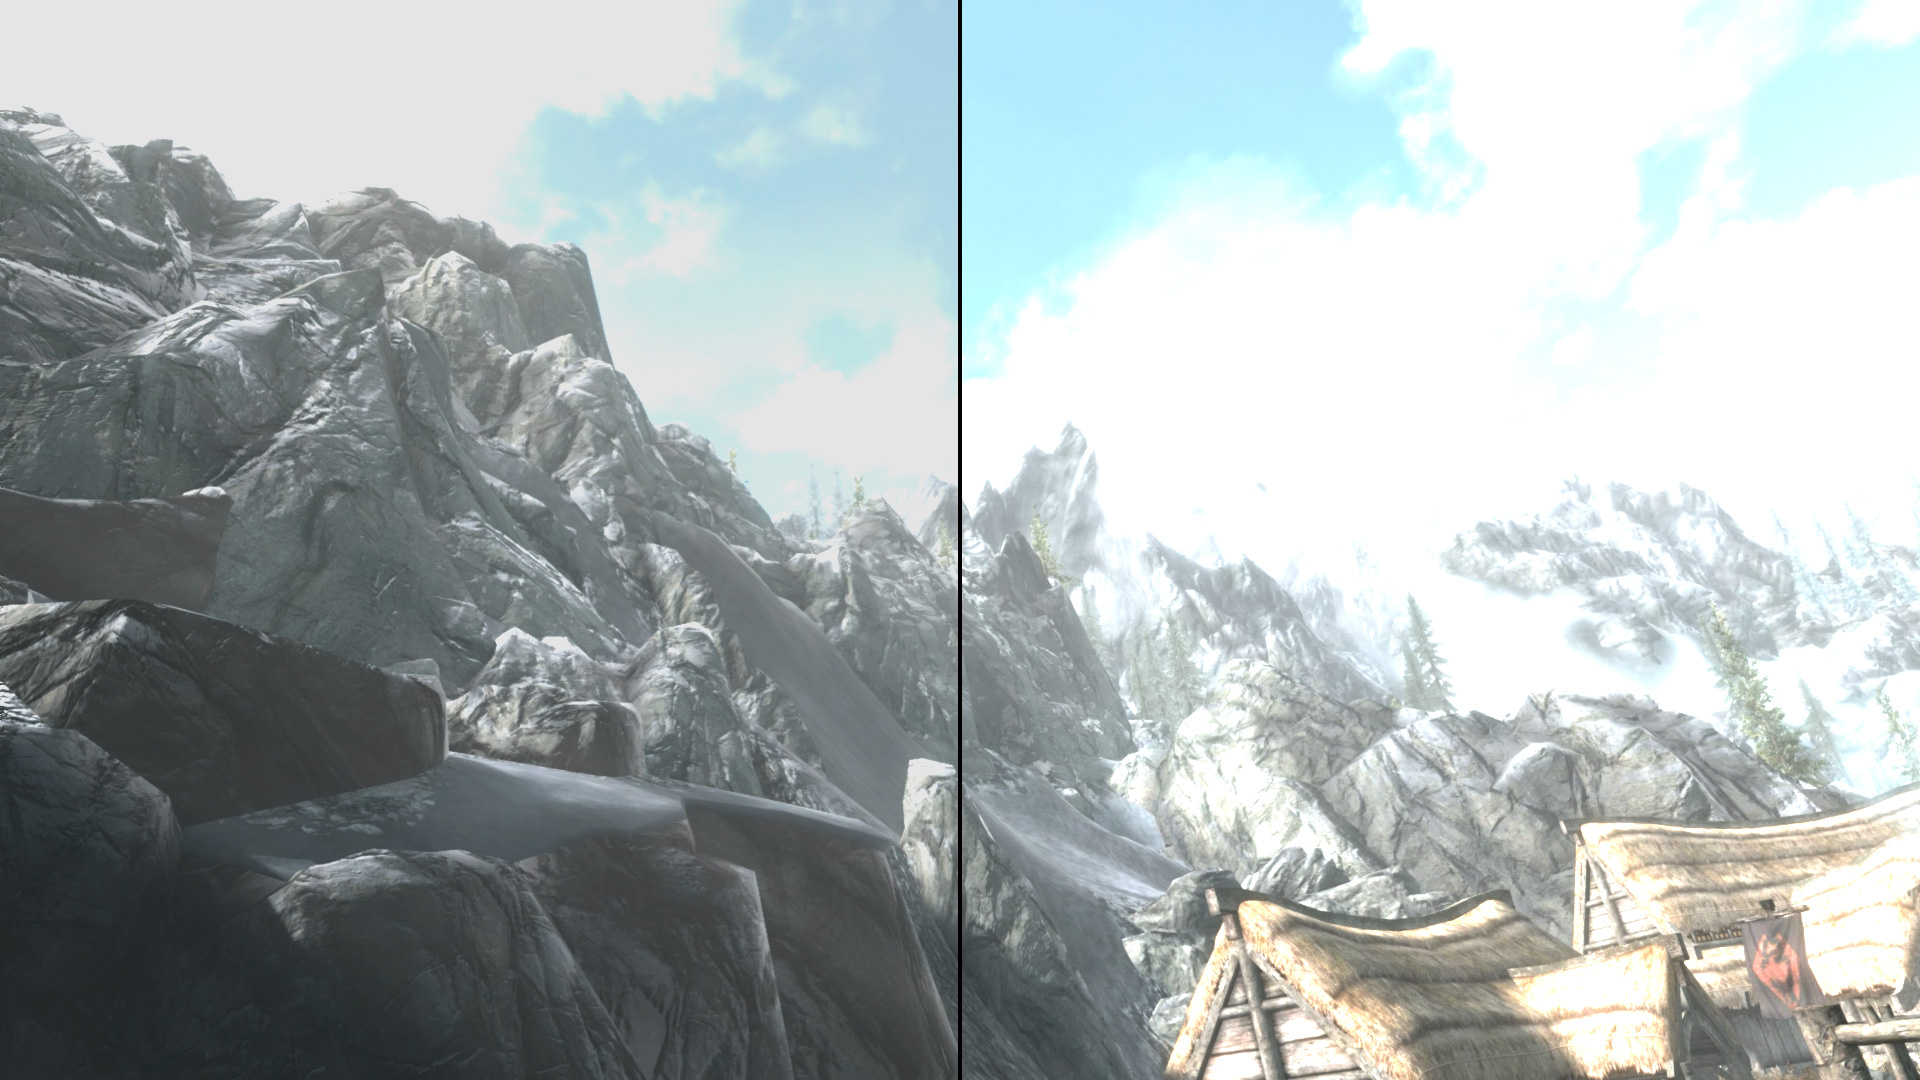 Images contrastées côte à côte représentant une hutte et des arbres, l’une étant plus claire